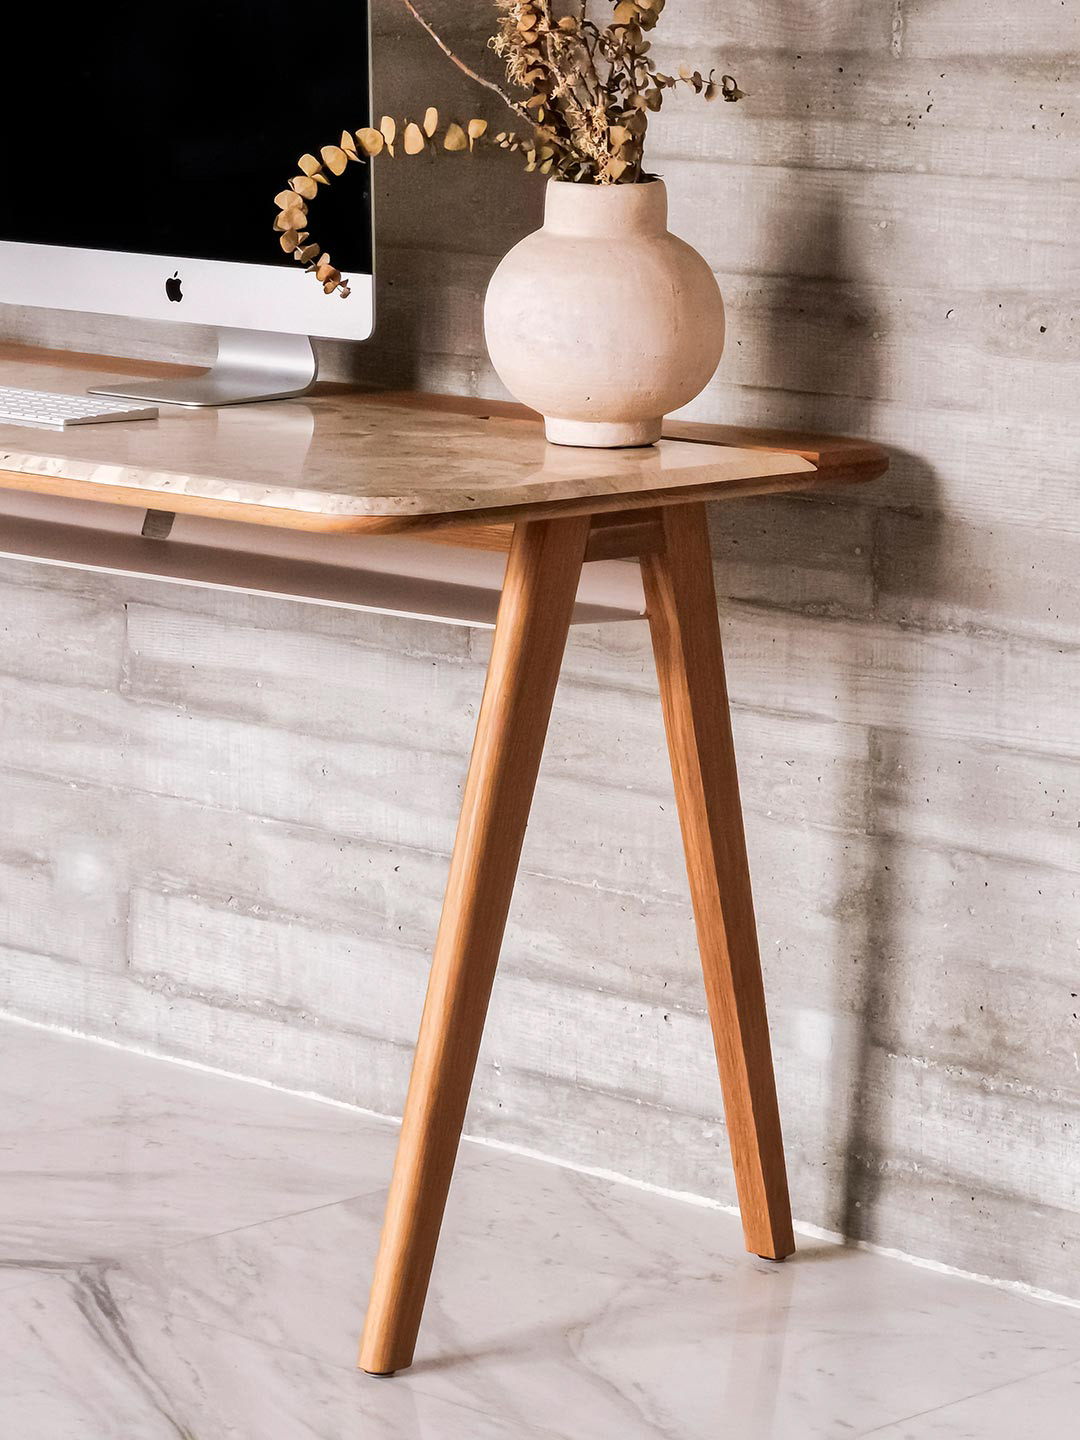 design desk details Draft Marble minimal oak solid wood